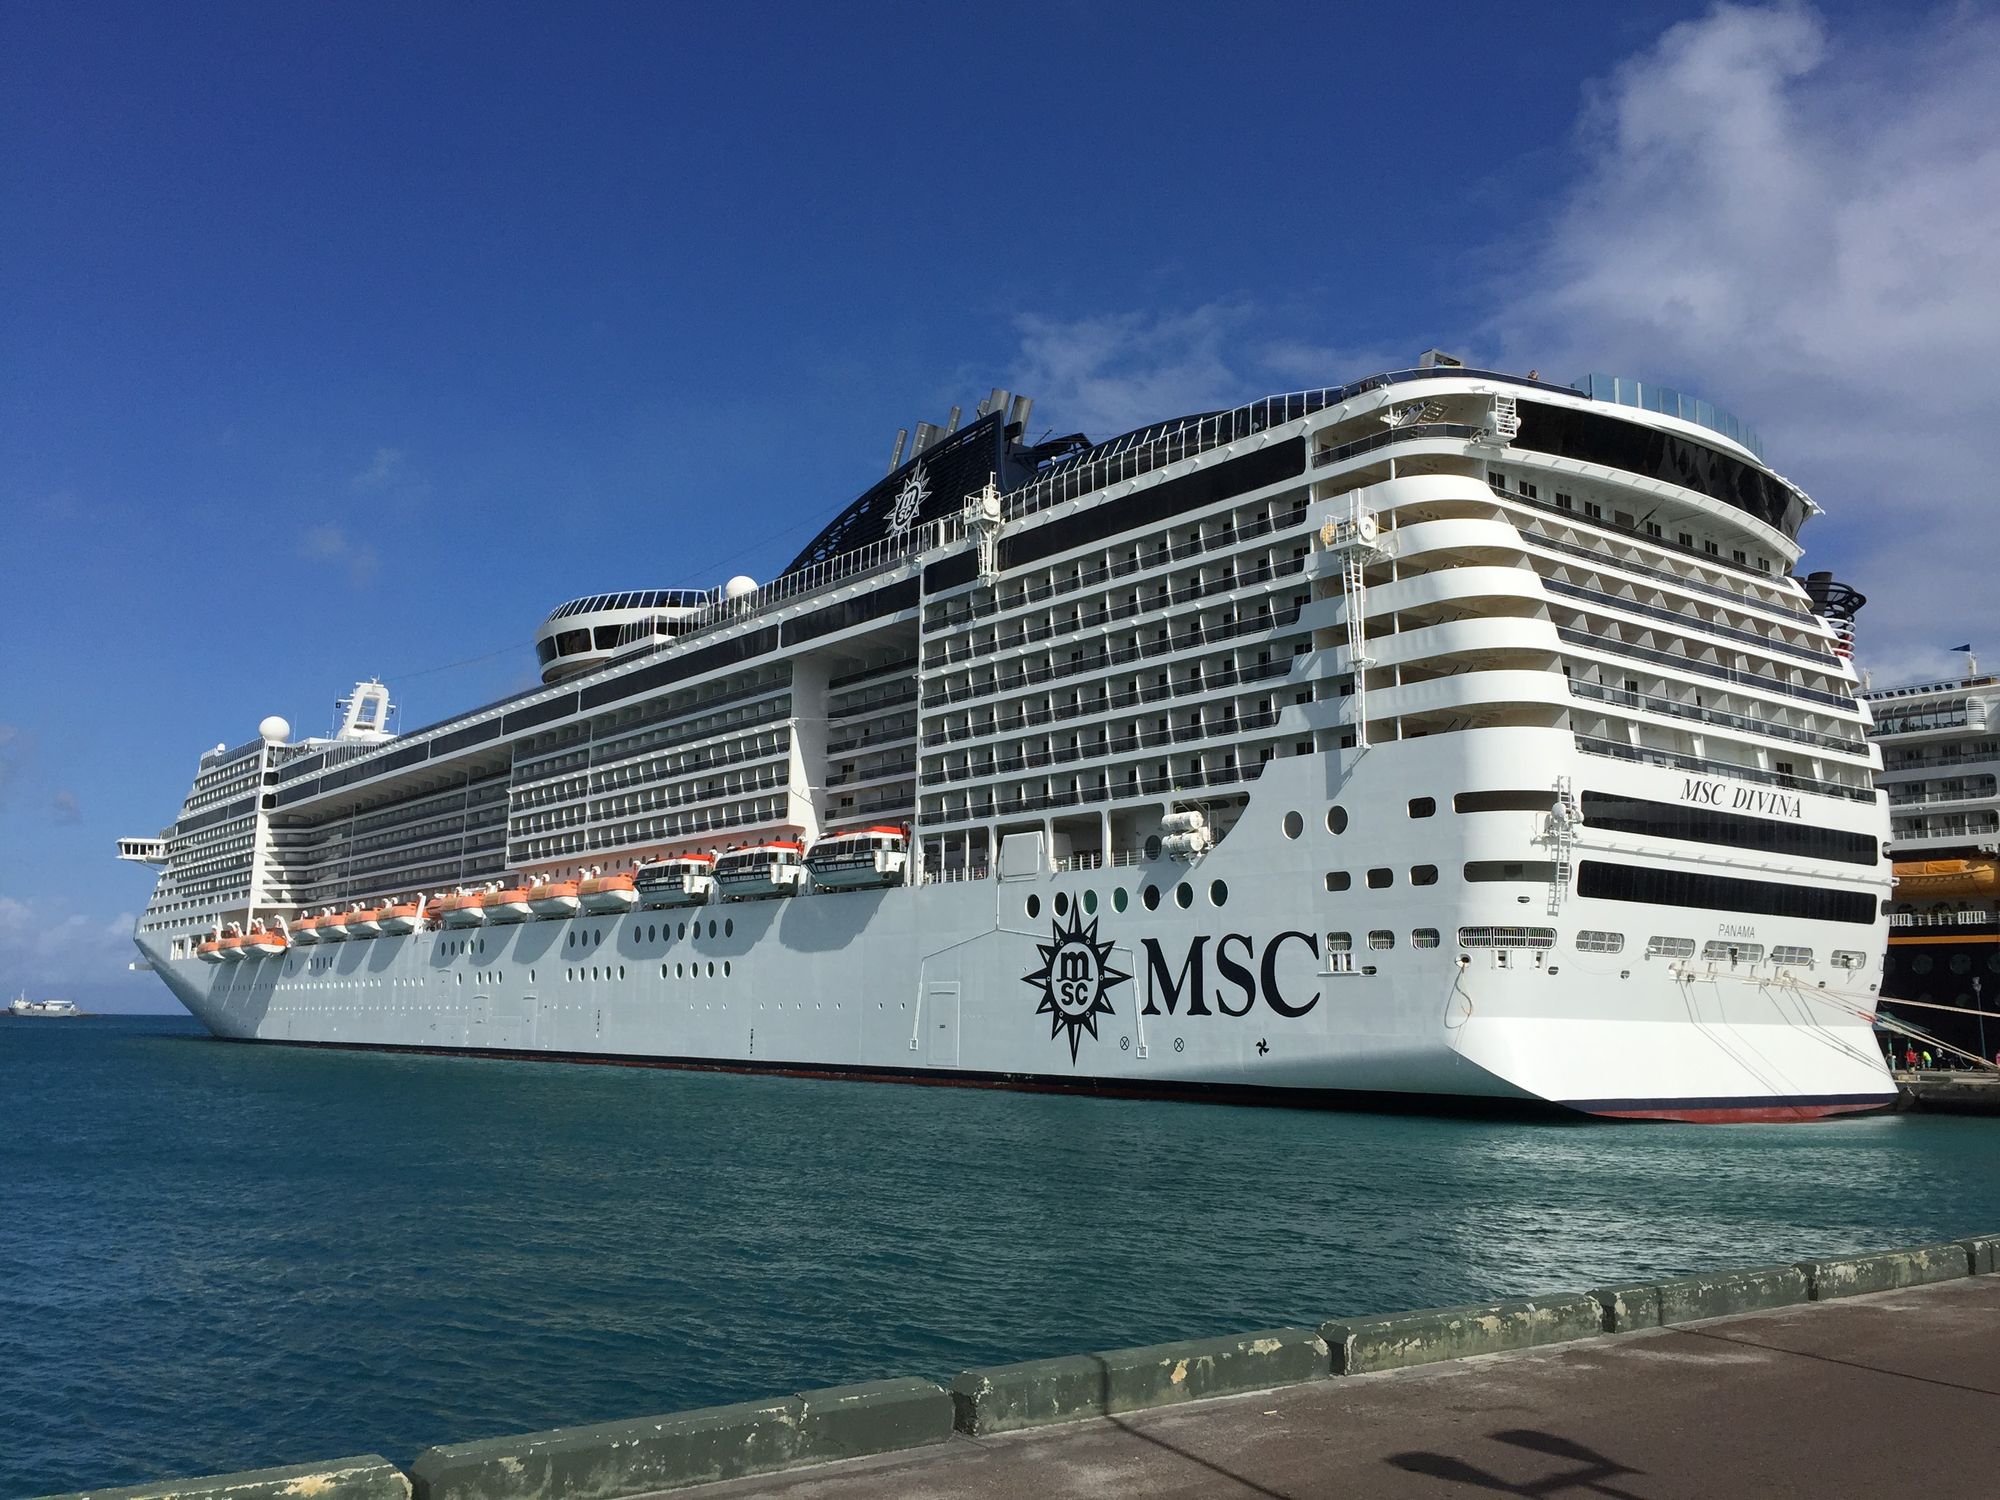 Cruceros por el Caribe para descubrir Bahamas